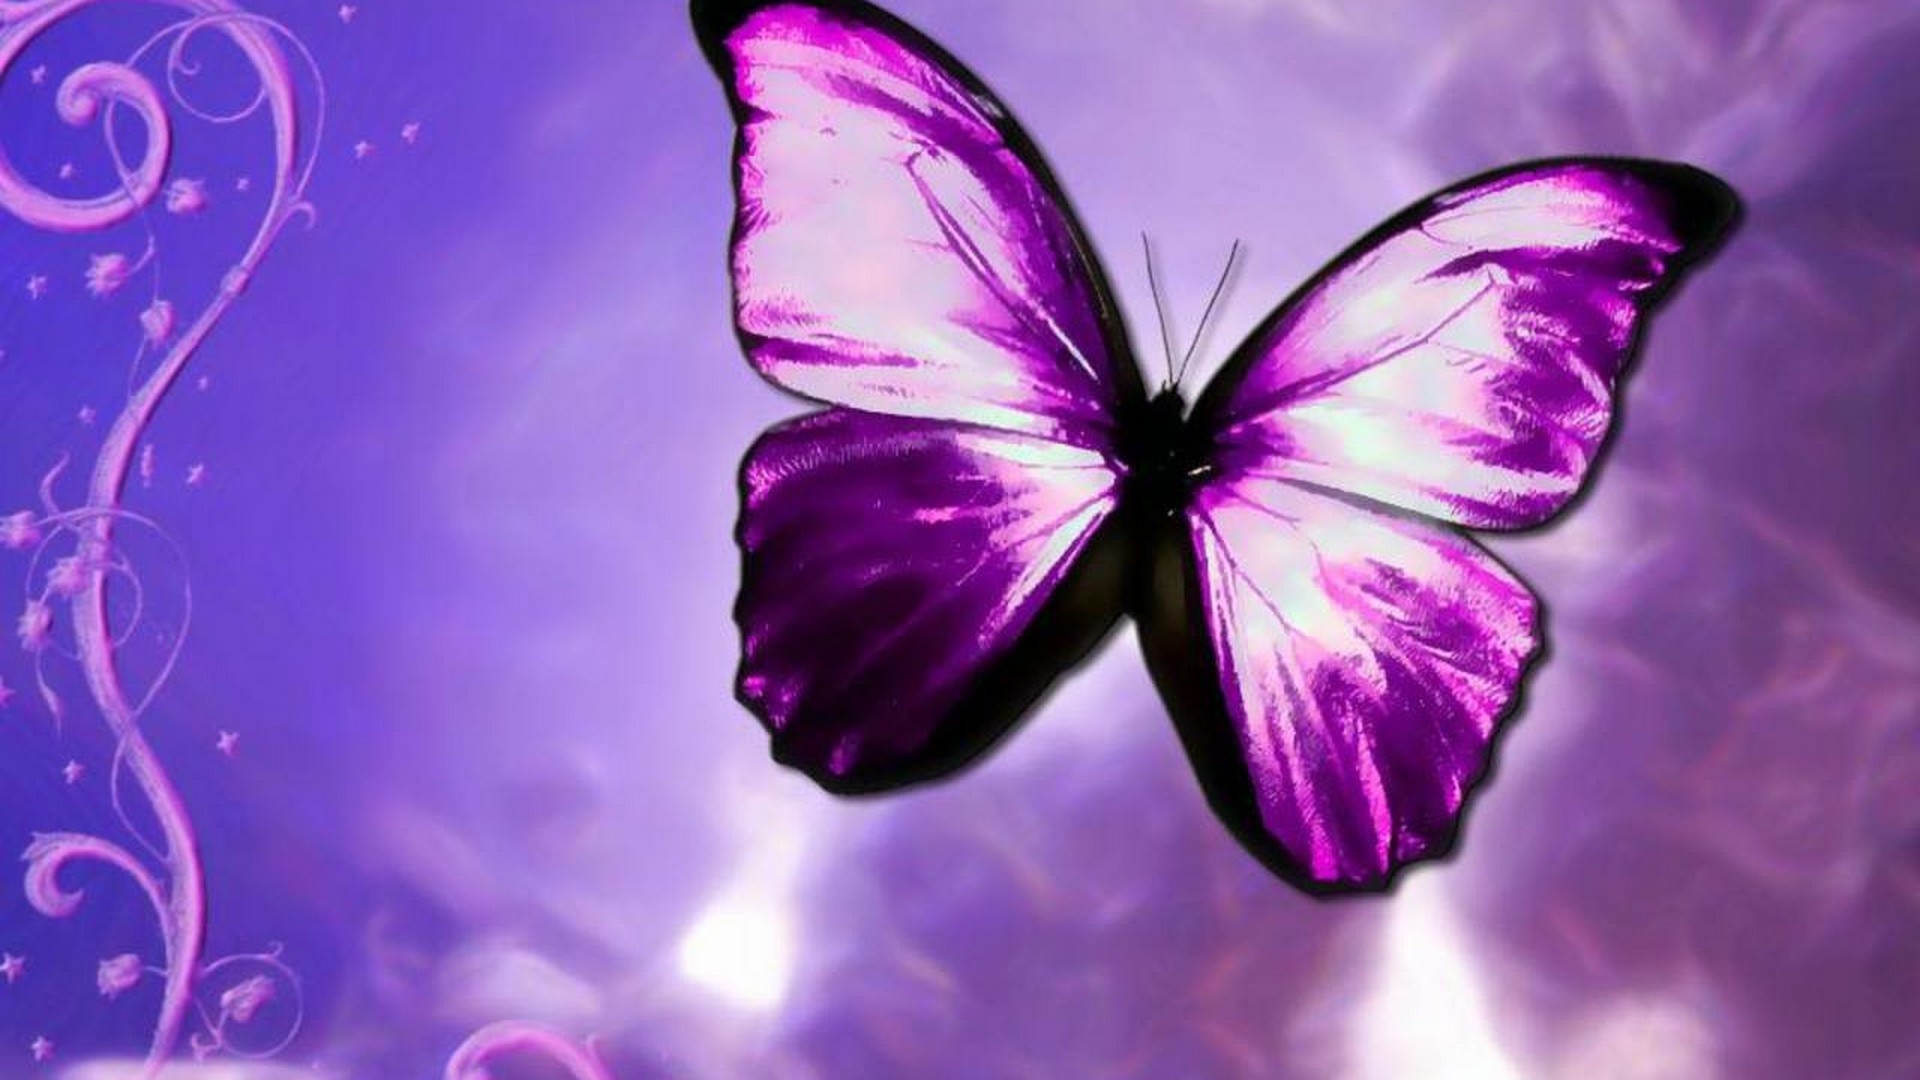 Purple Butterfly Desktop Backgrounds HD Resolution 1920x1080